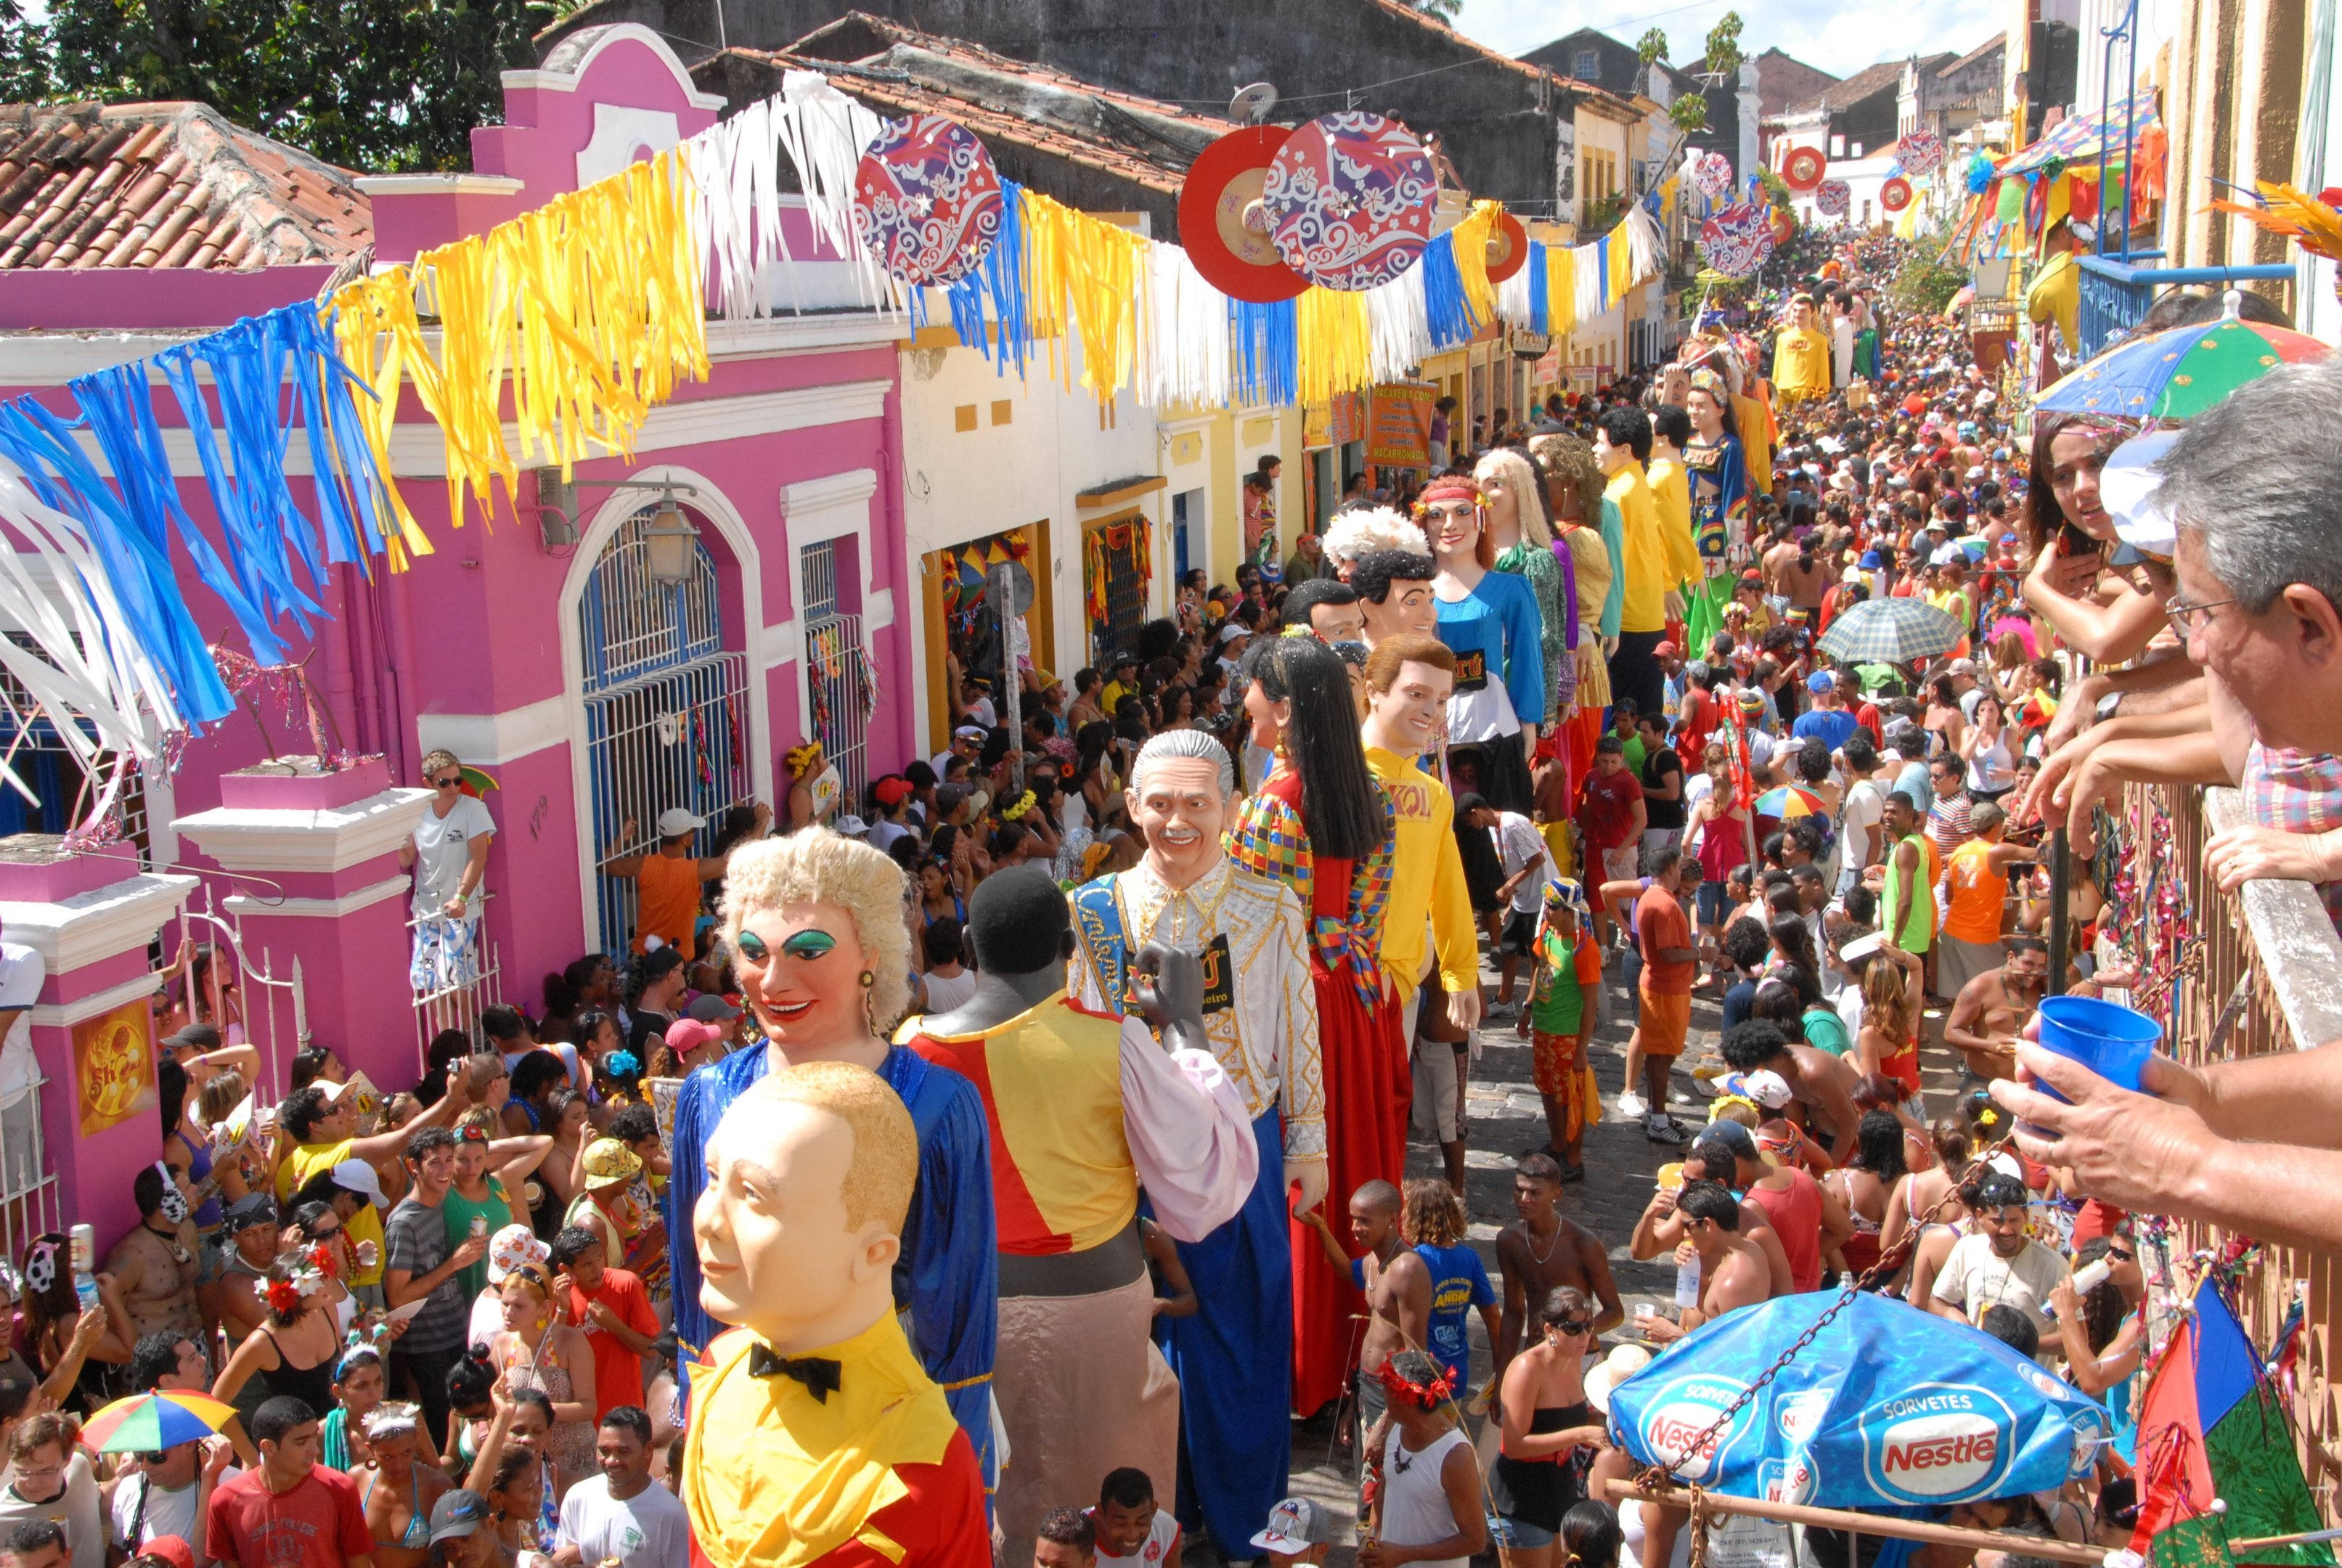 Prefeitura de Olinda cancela realização do carnaval de rua | Exame